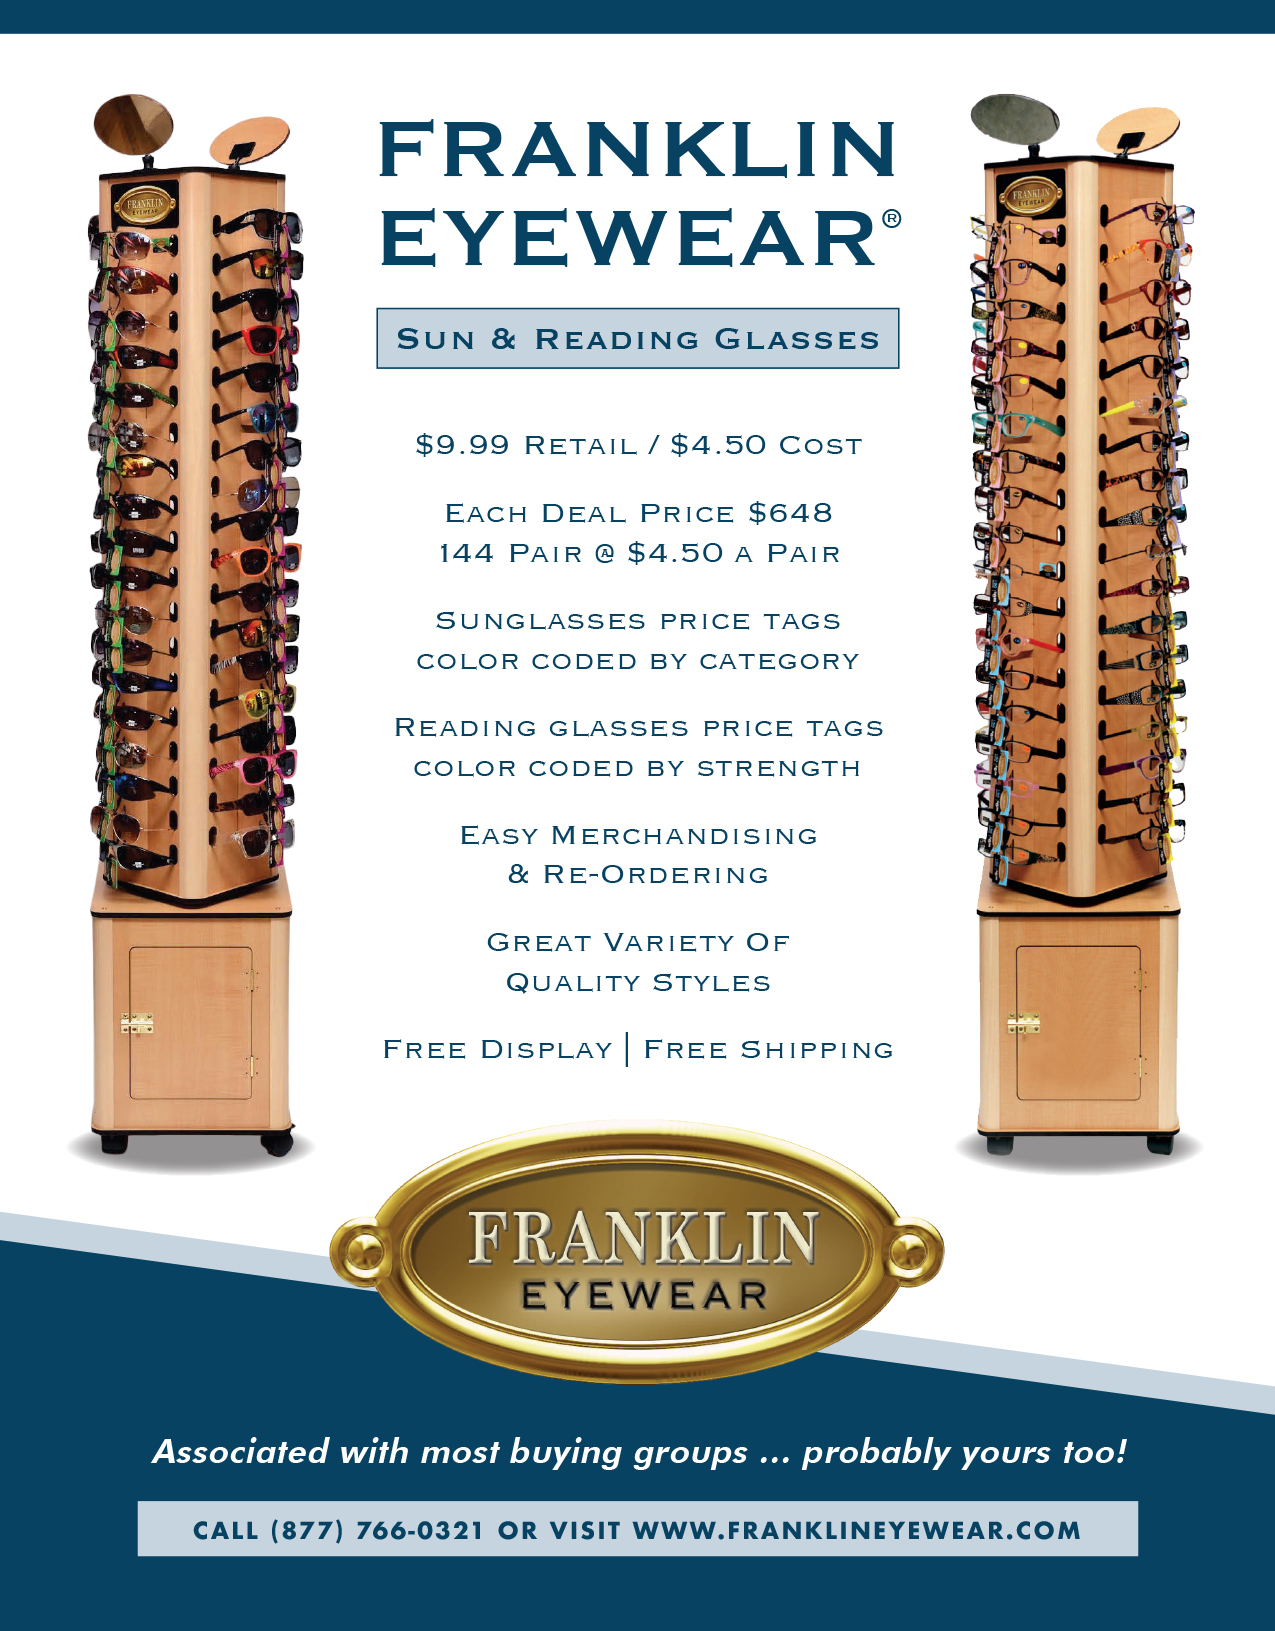 Franklin Eyewear